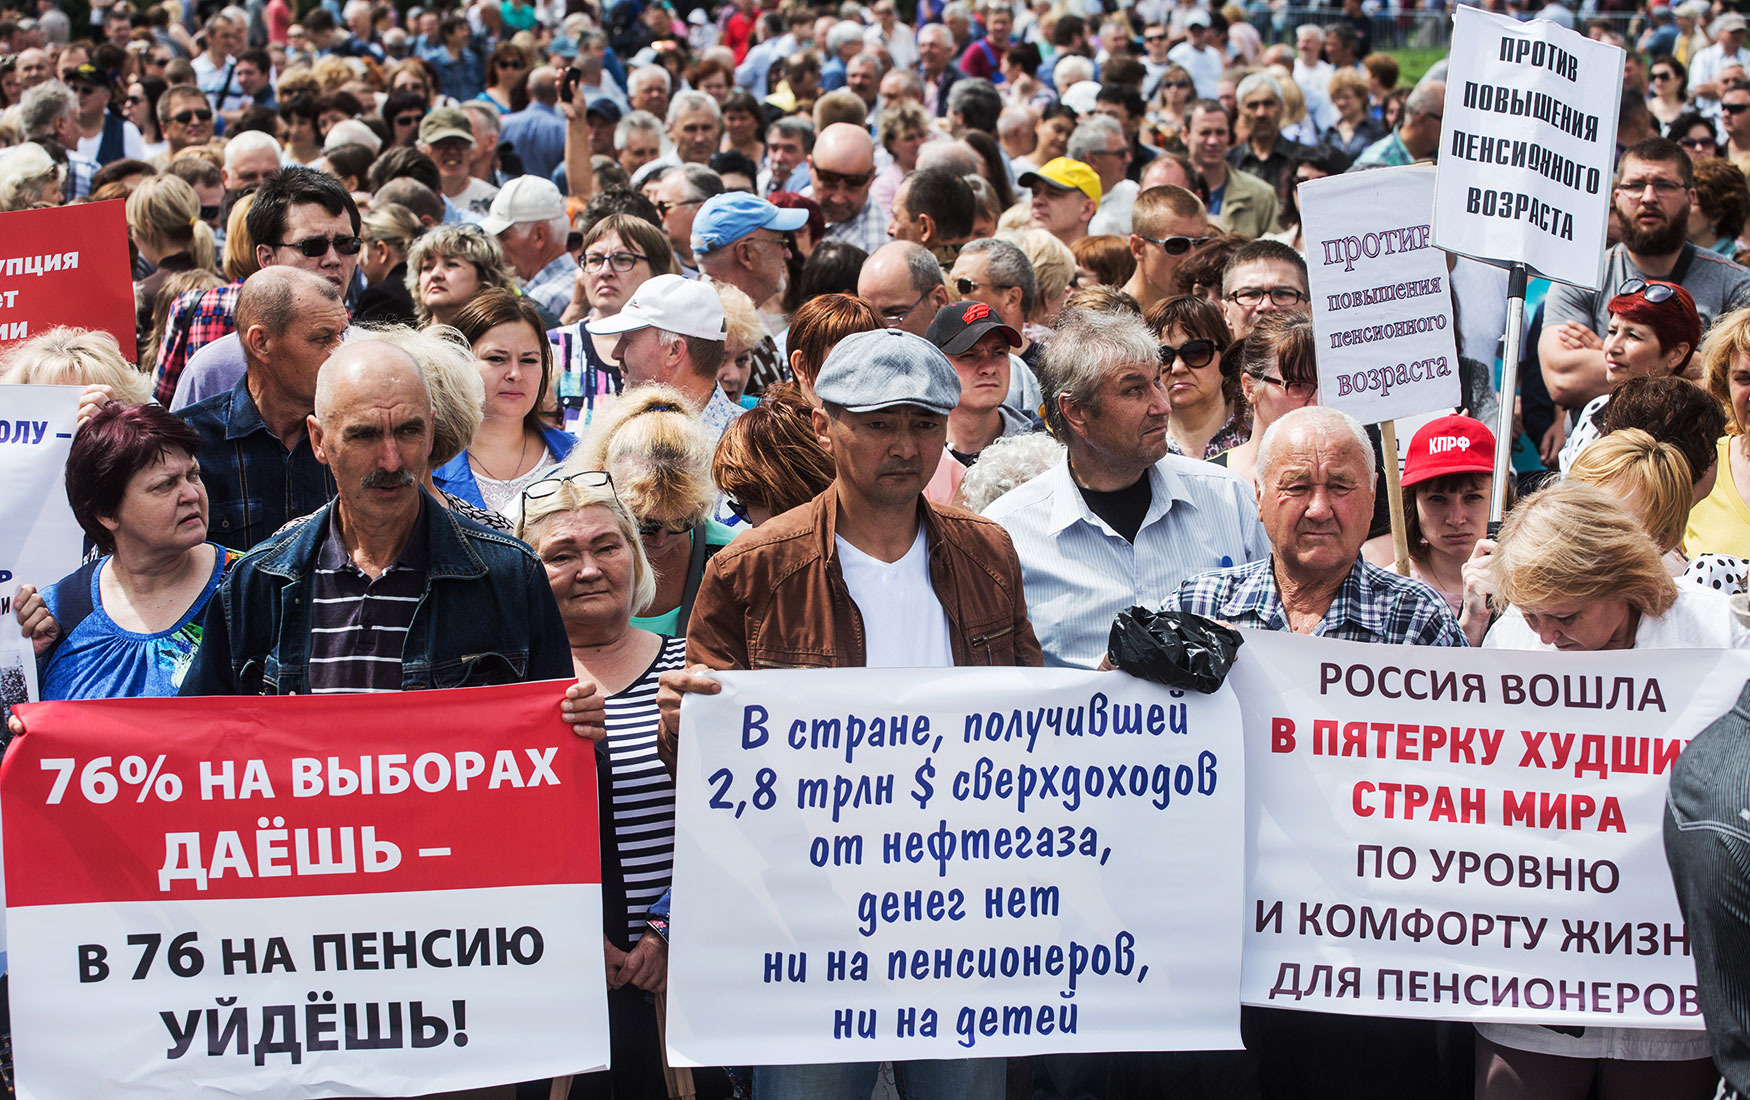 Последнее возраст пенсия. Повышение пенсионного возраста. Пенсионная реформа в России. Митинг против повышения пенсионного возраста. Повышение пенсионного возраста реформа.